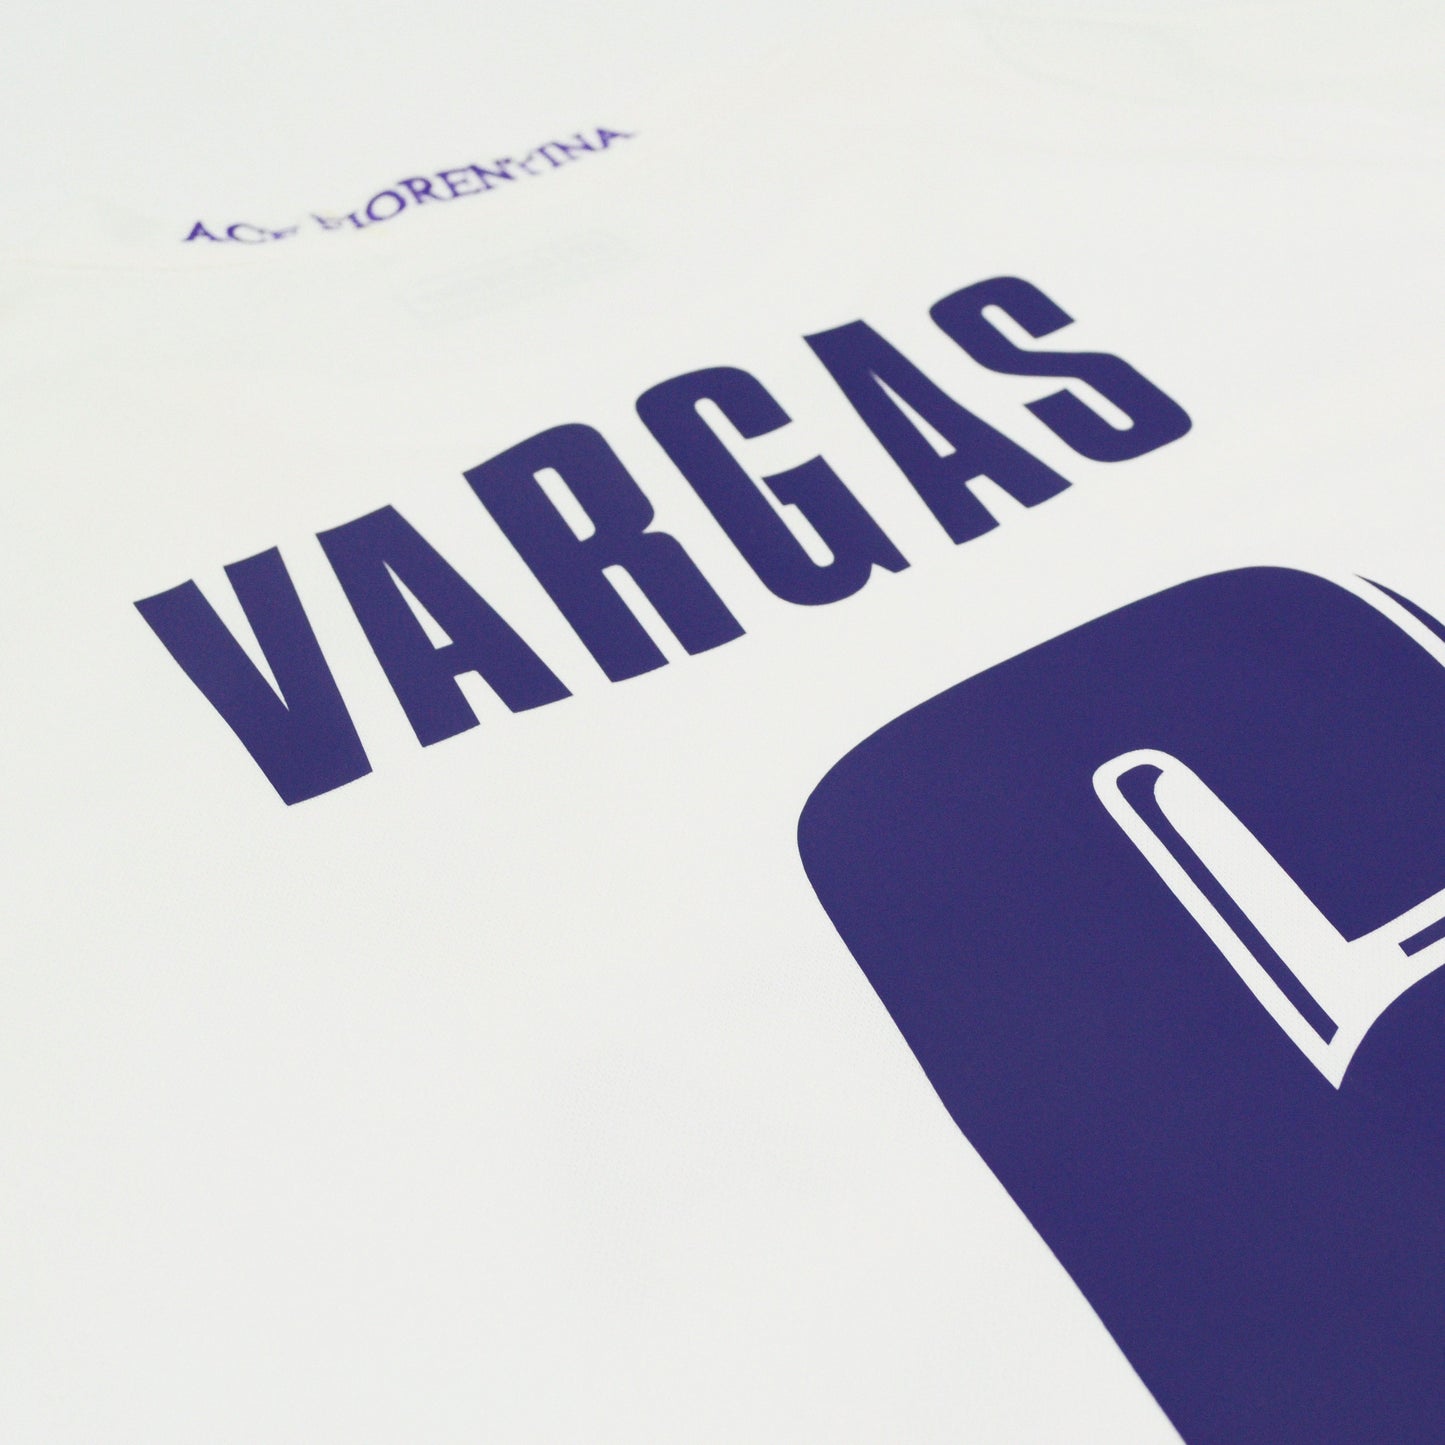 2008-09 Lotto Fiorentina Match Worn Away Shirt Vargas 6 XL